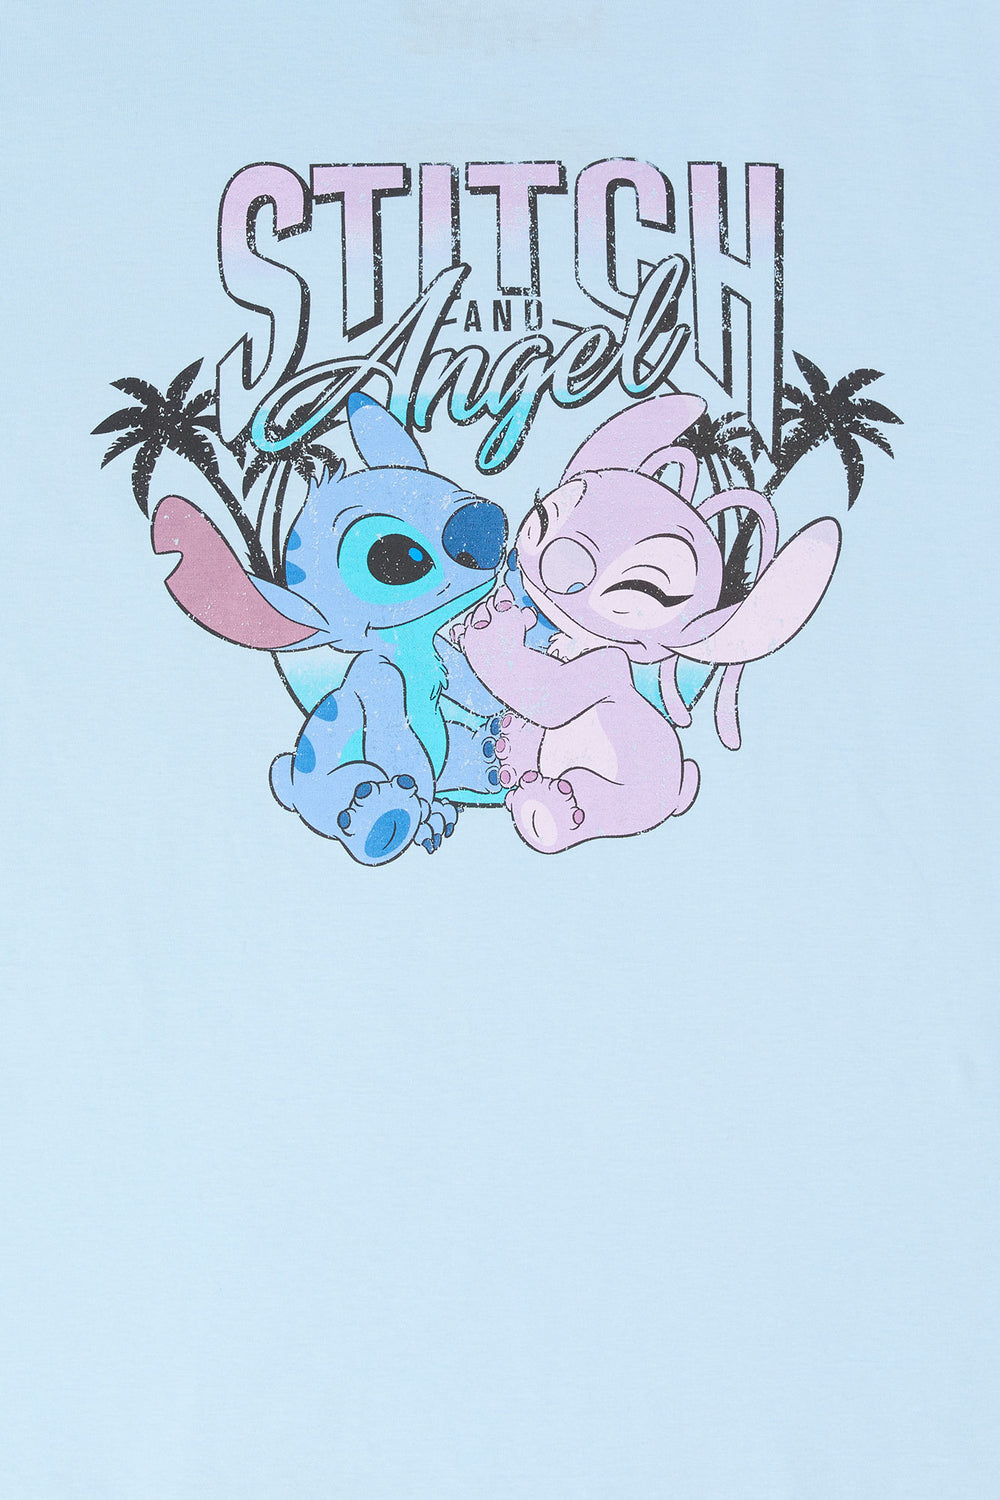 Stitch and Angel Graphic Boyfriend T-Shirt Stitch and Angel Graphic Boyfriend T-Shirt 1